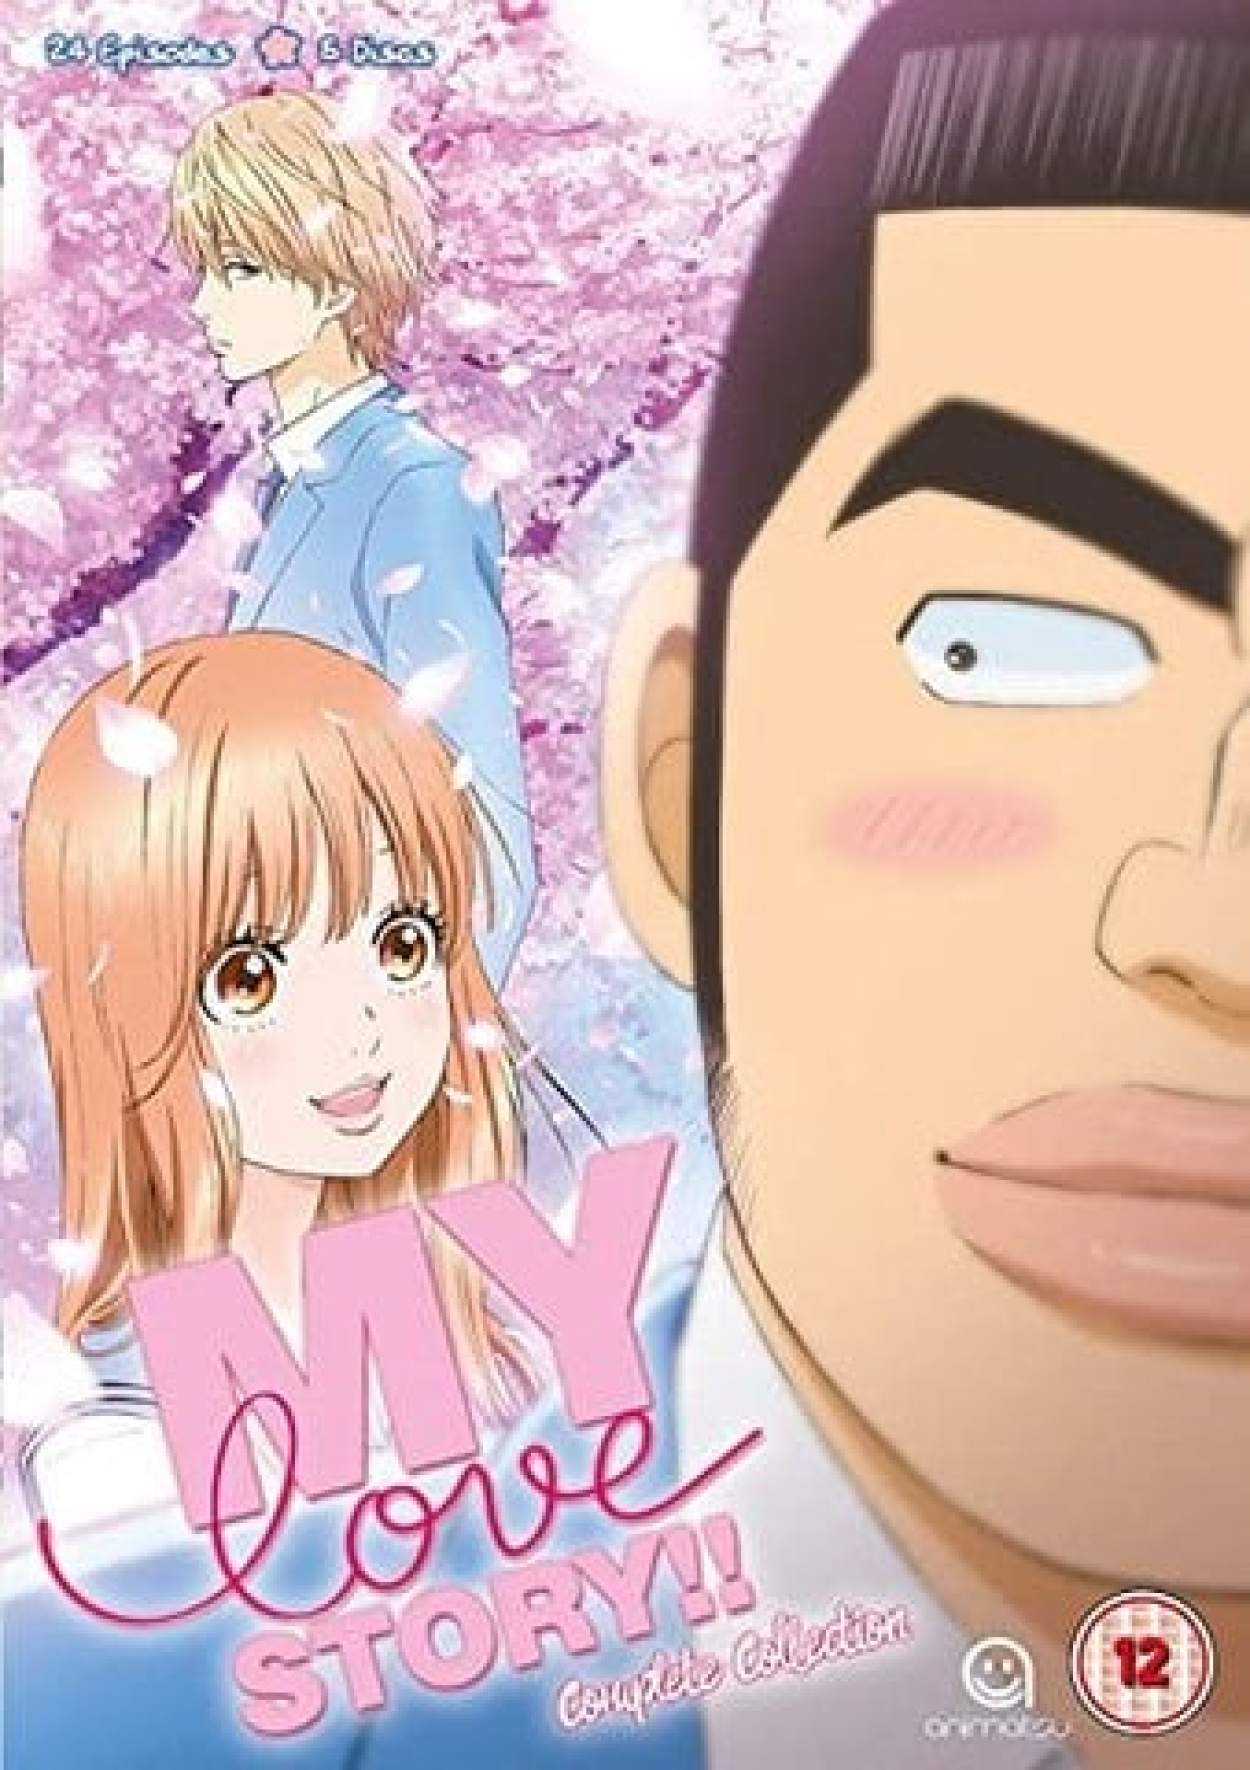 10 Animes de Ação com Romance que o casal namora